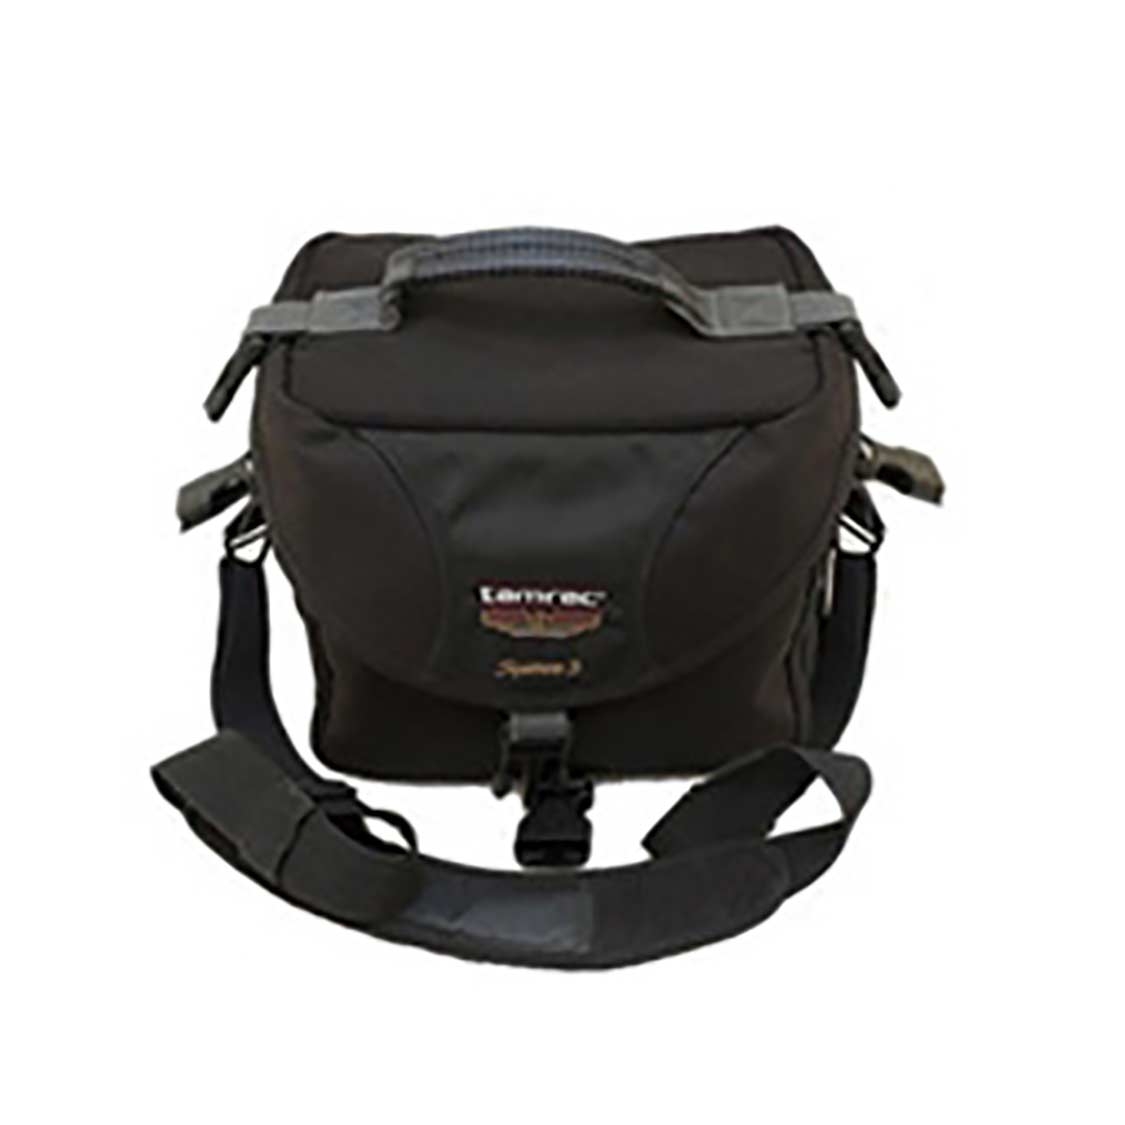 Canon Tamrac System 3 Digital Gadget Bag